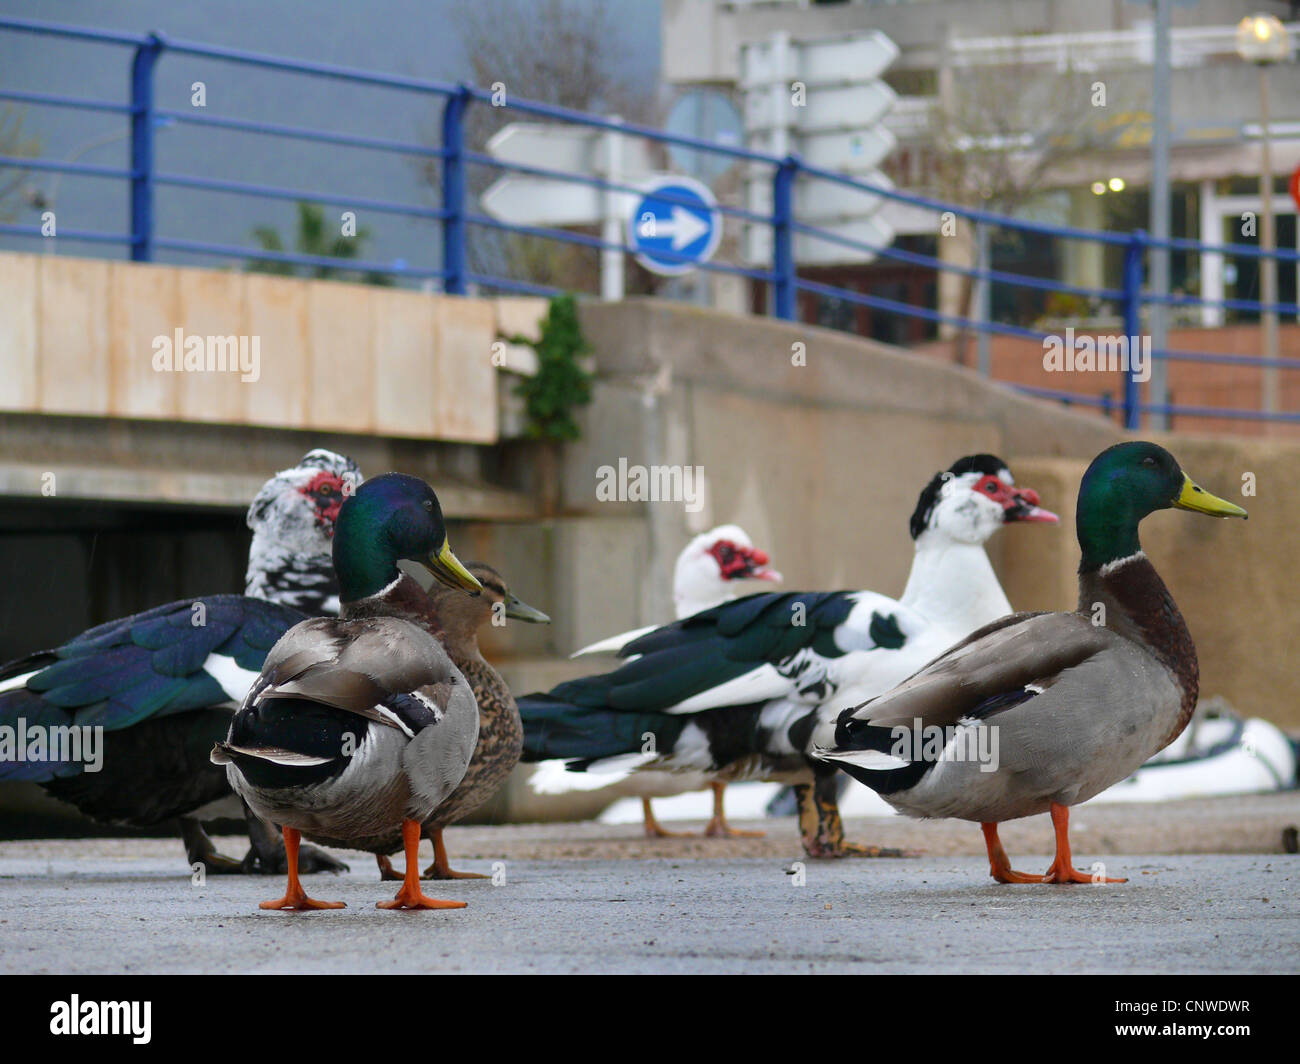 Stockente (Anas Platyrhynchos), eine Gruppe von Vogel in der Stadt stehen auf Asphalt auf der Suche in die Richtung wies durch ein Verkehrsschild Stockfoto